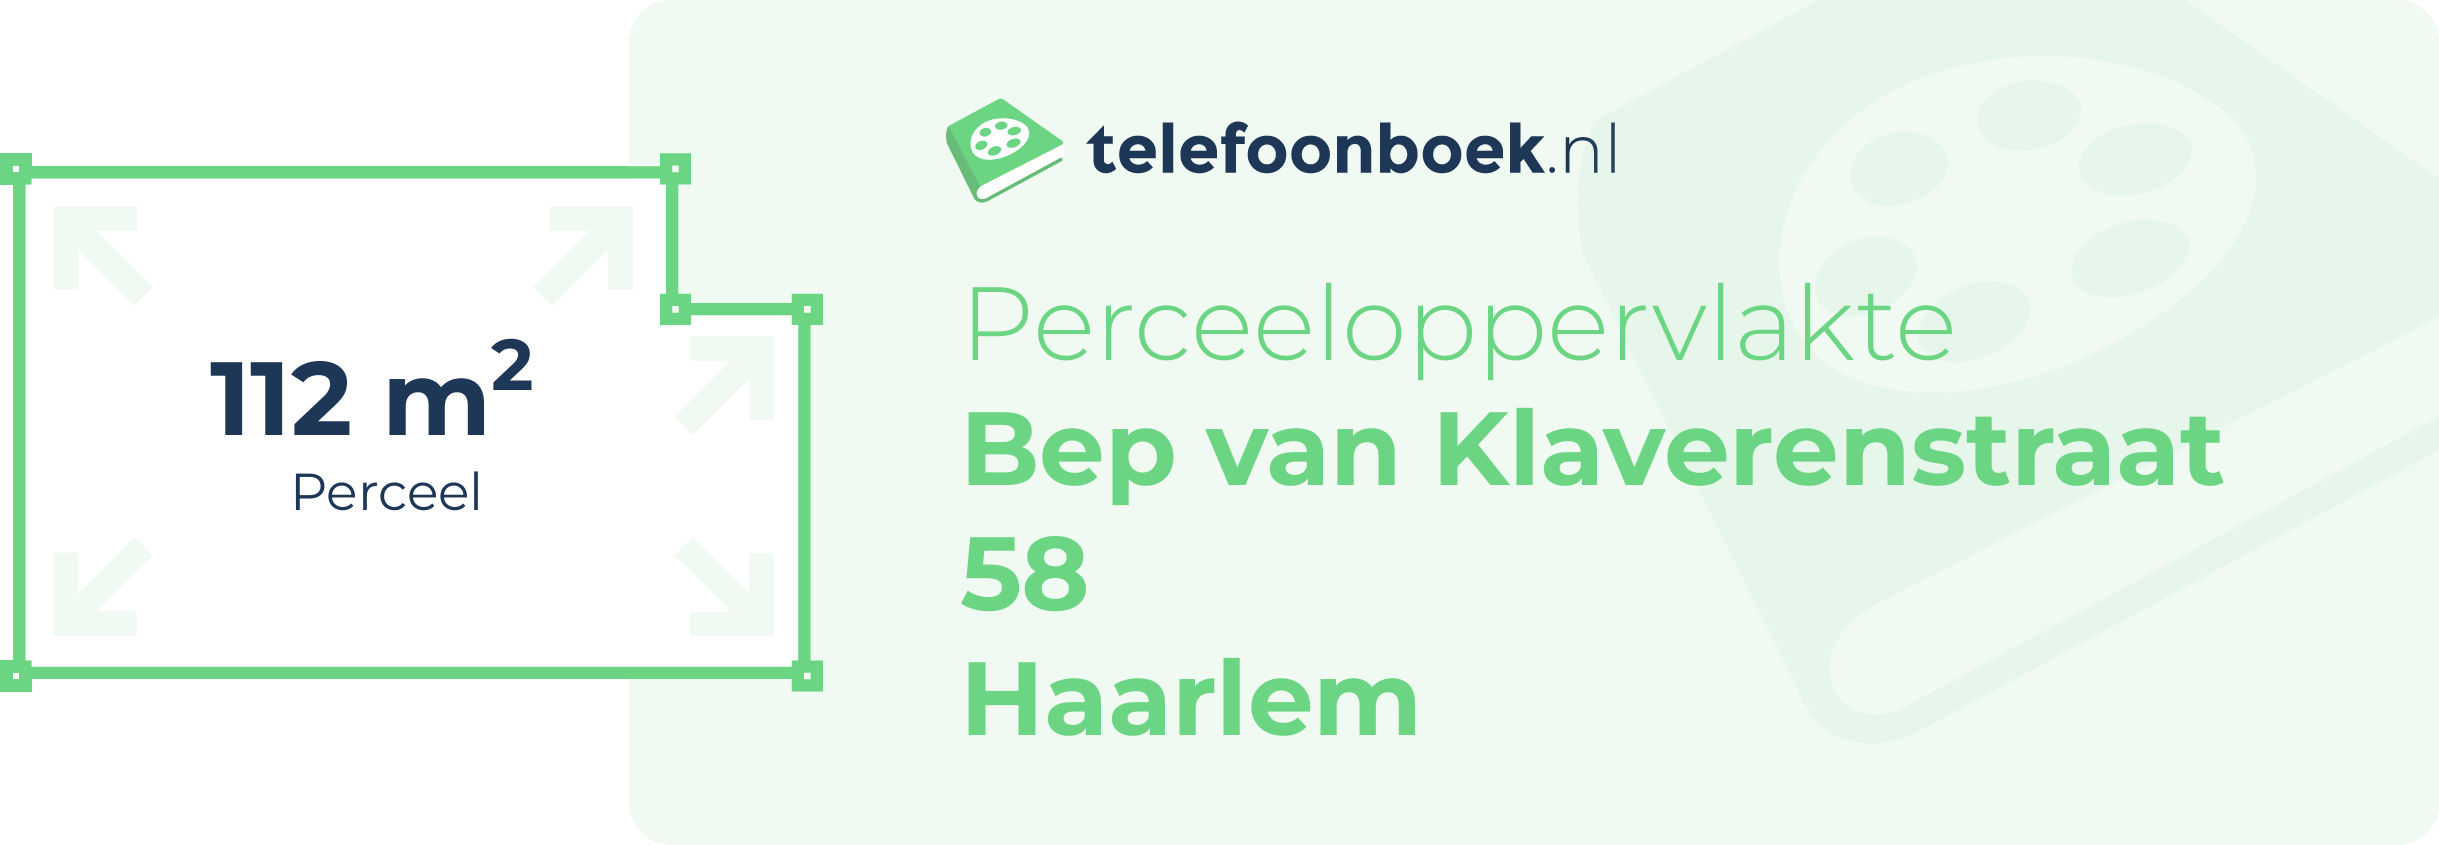 Perceeloppervlakte Bep Van Klaverenstraat 58 Haarlem